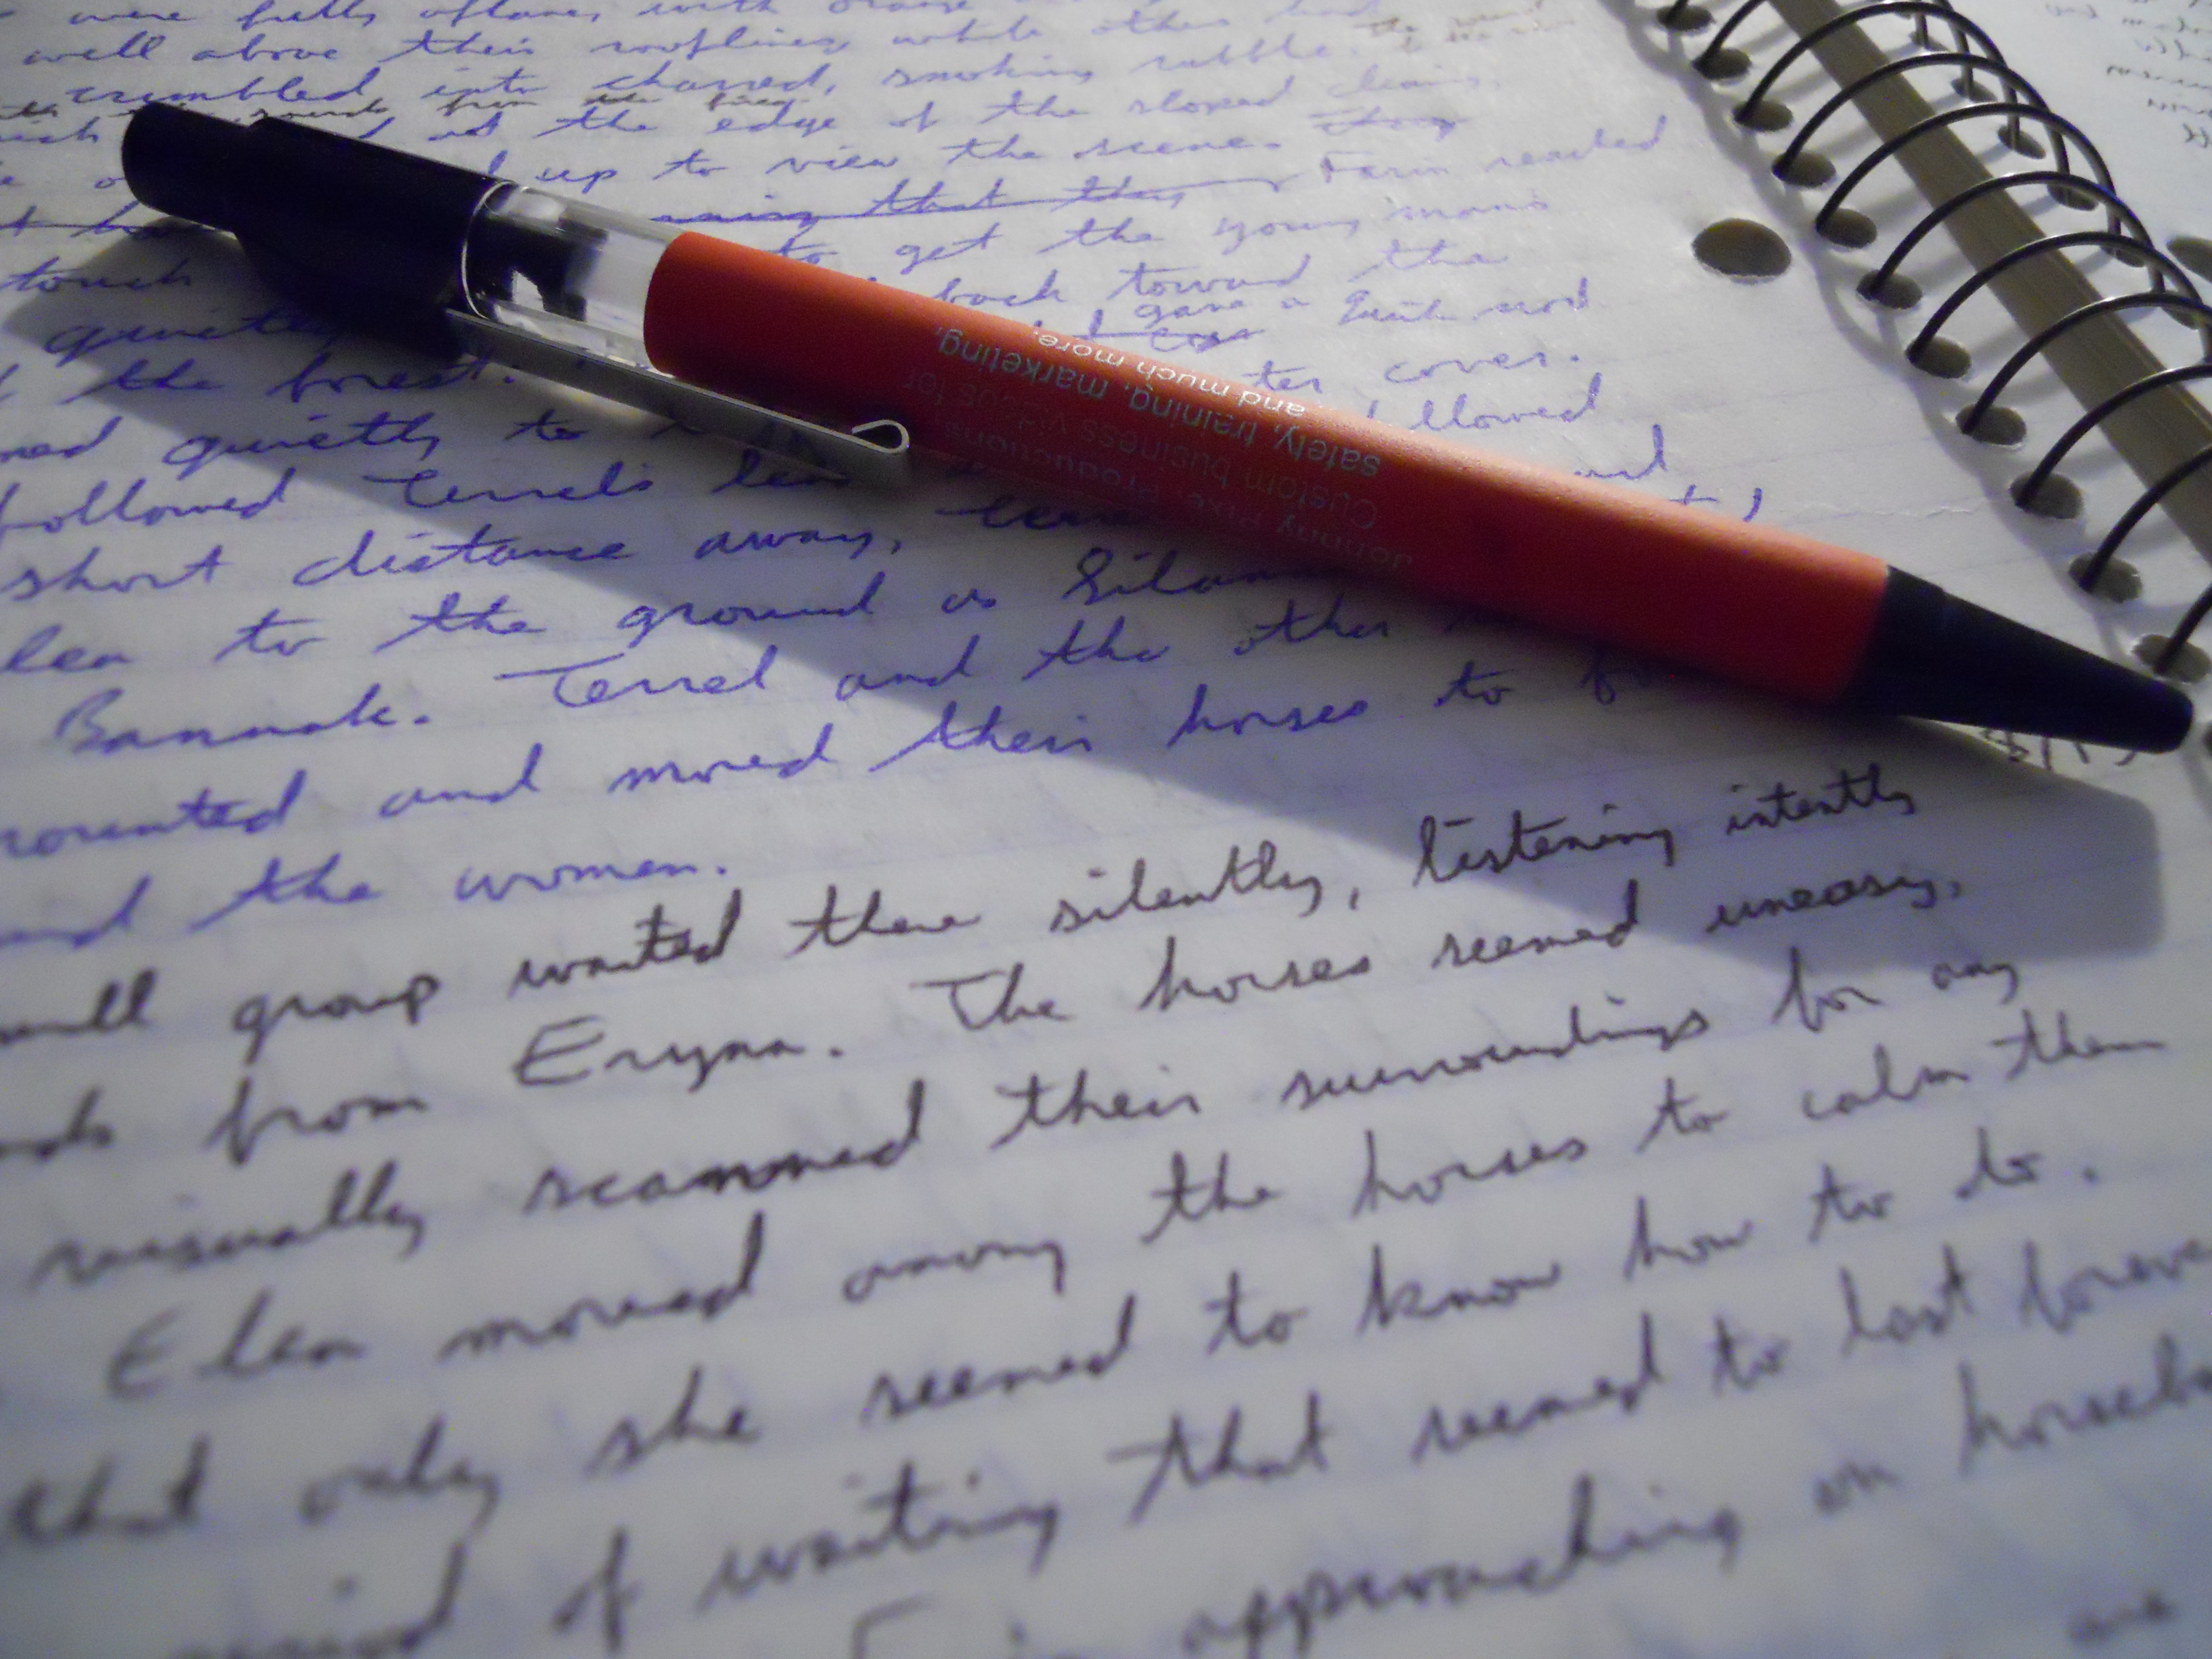 Writ forum. Написание текста. Красивая ручка для письма. Красивый почерк в тетрад. Красивое письмо от руки.